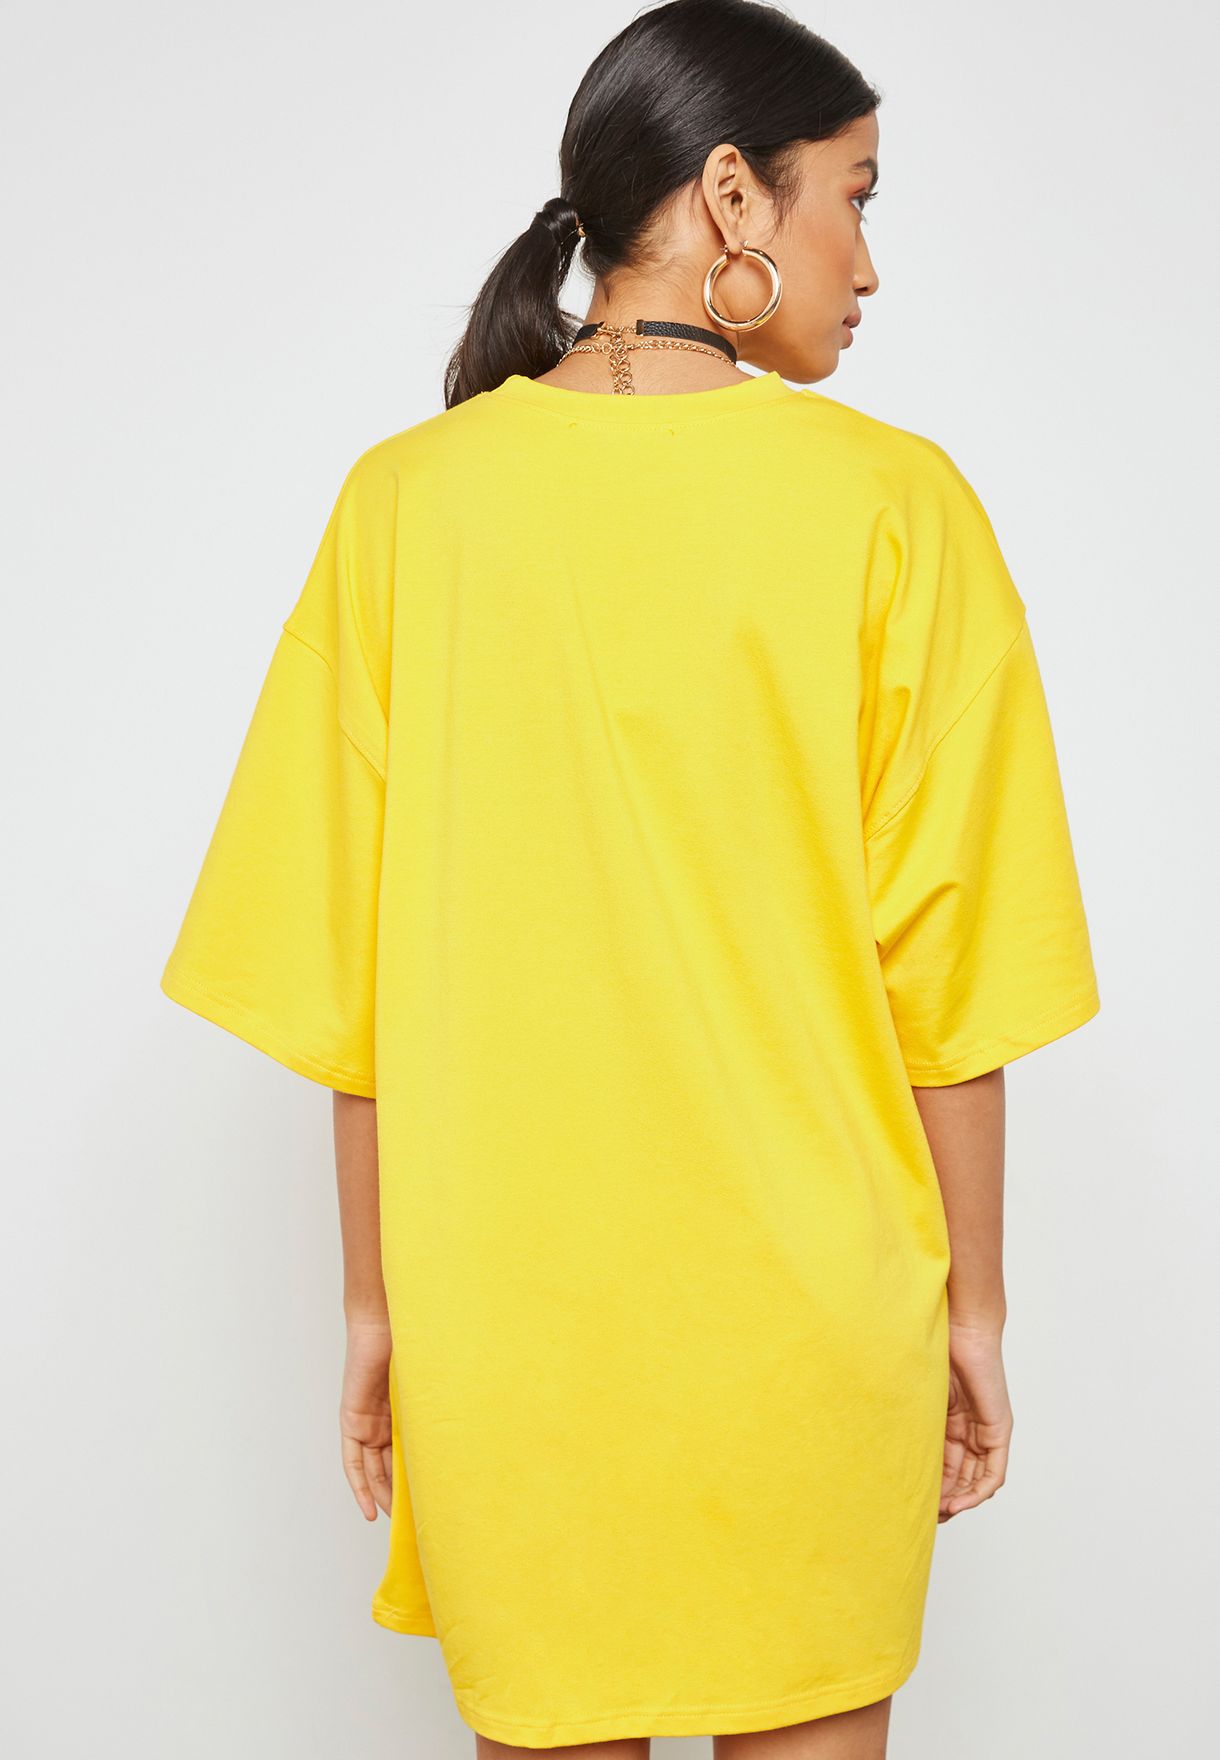 yellow oversized t shirt dress